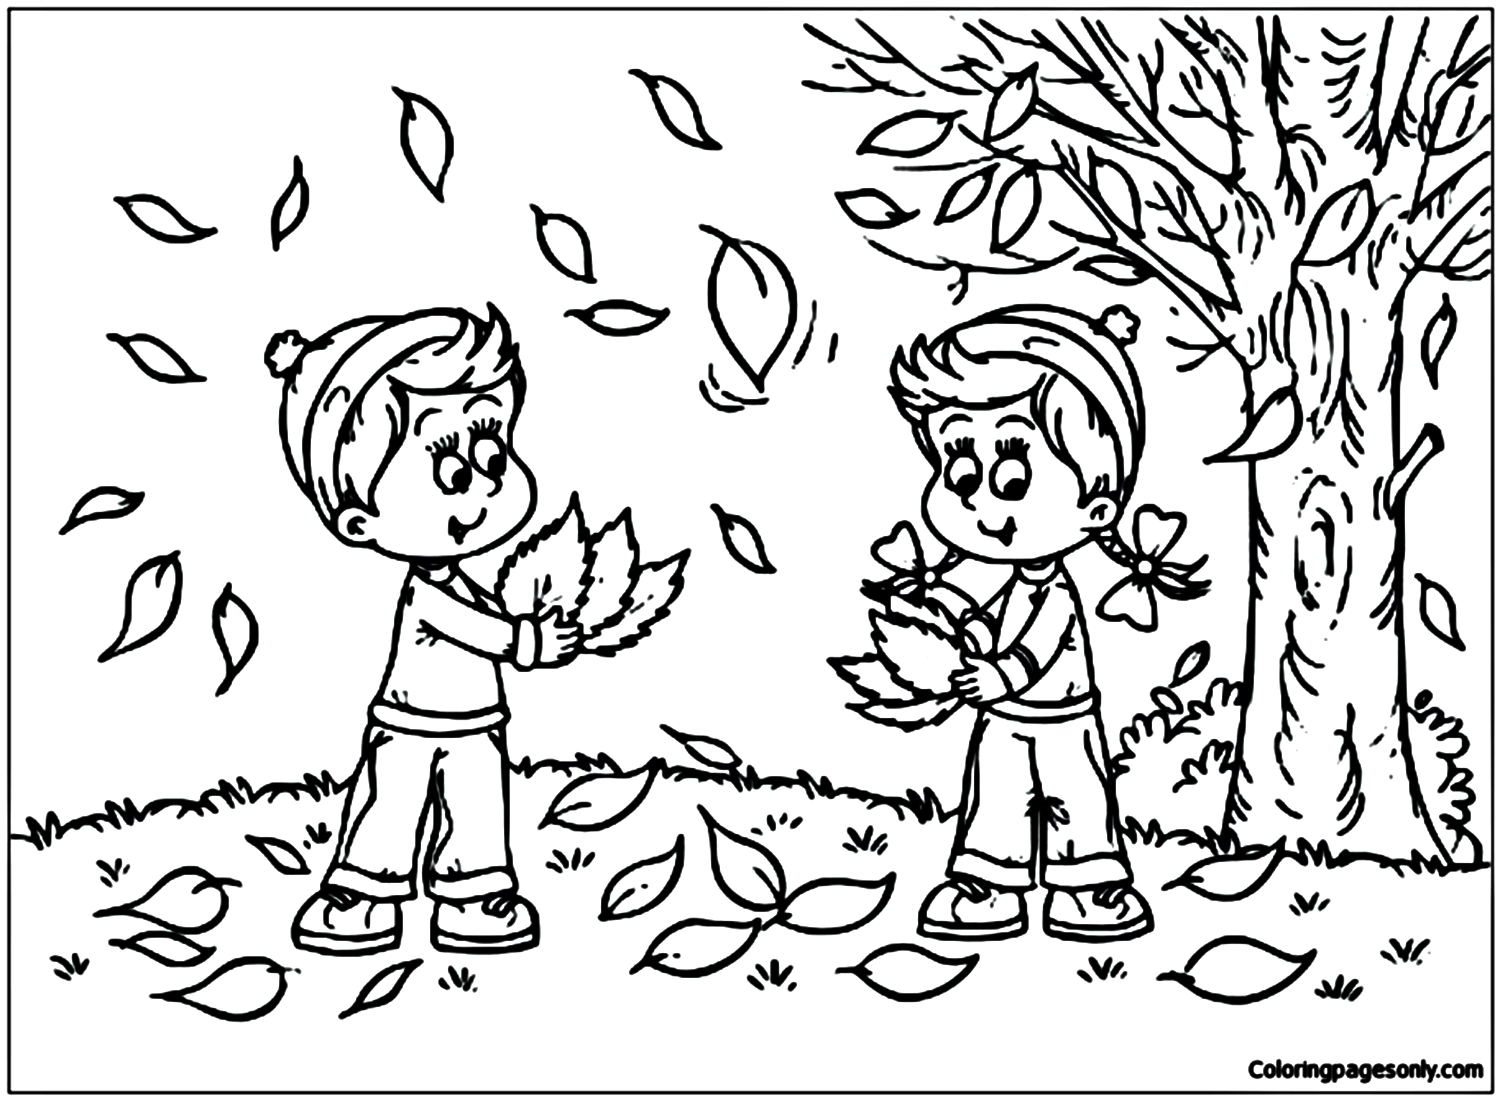 Kinderen spelen met herfstbladeren uit de herfst